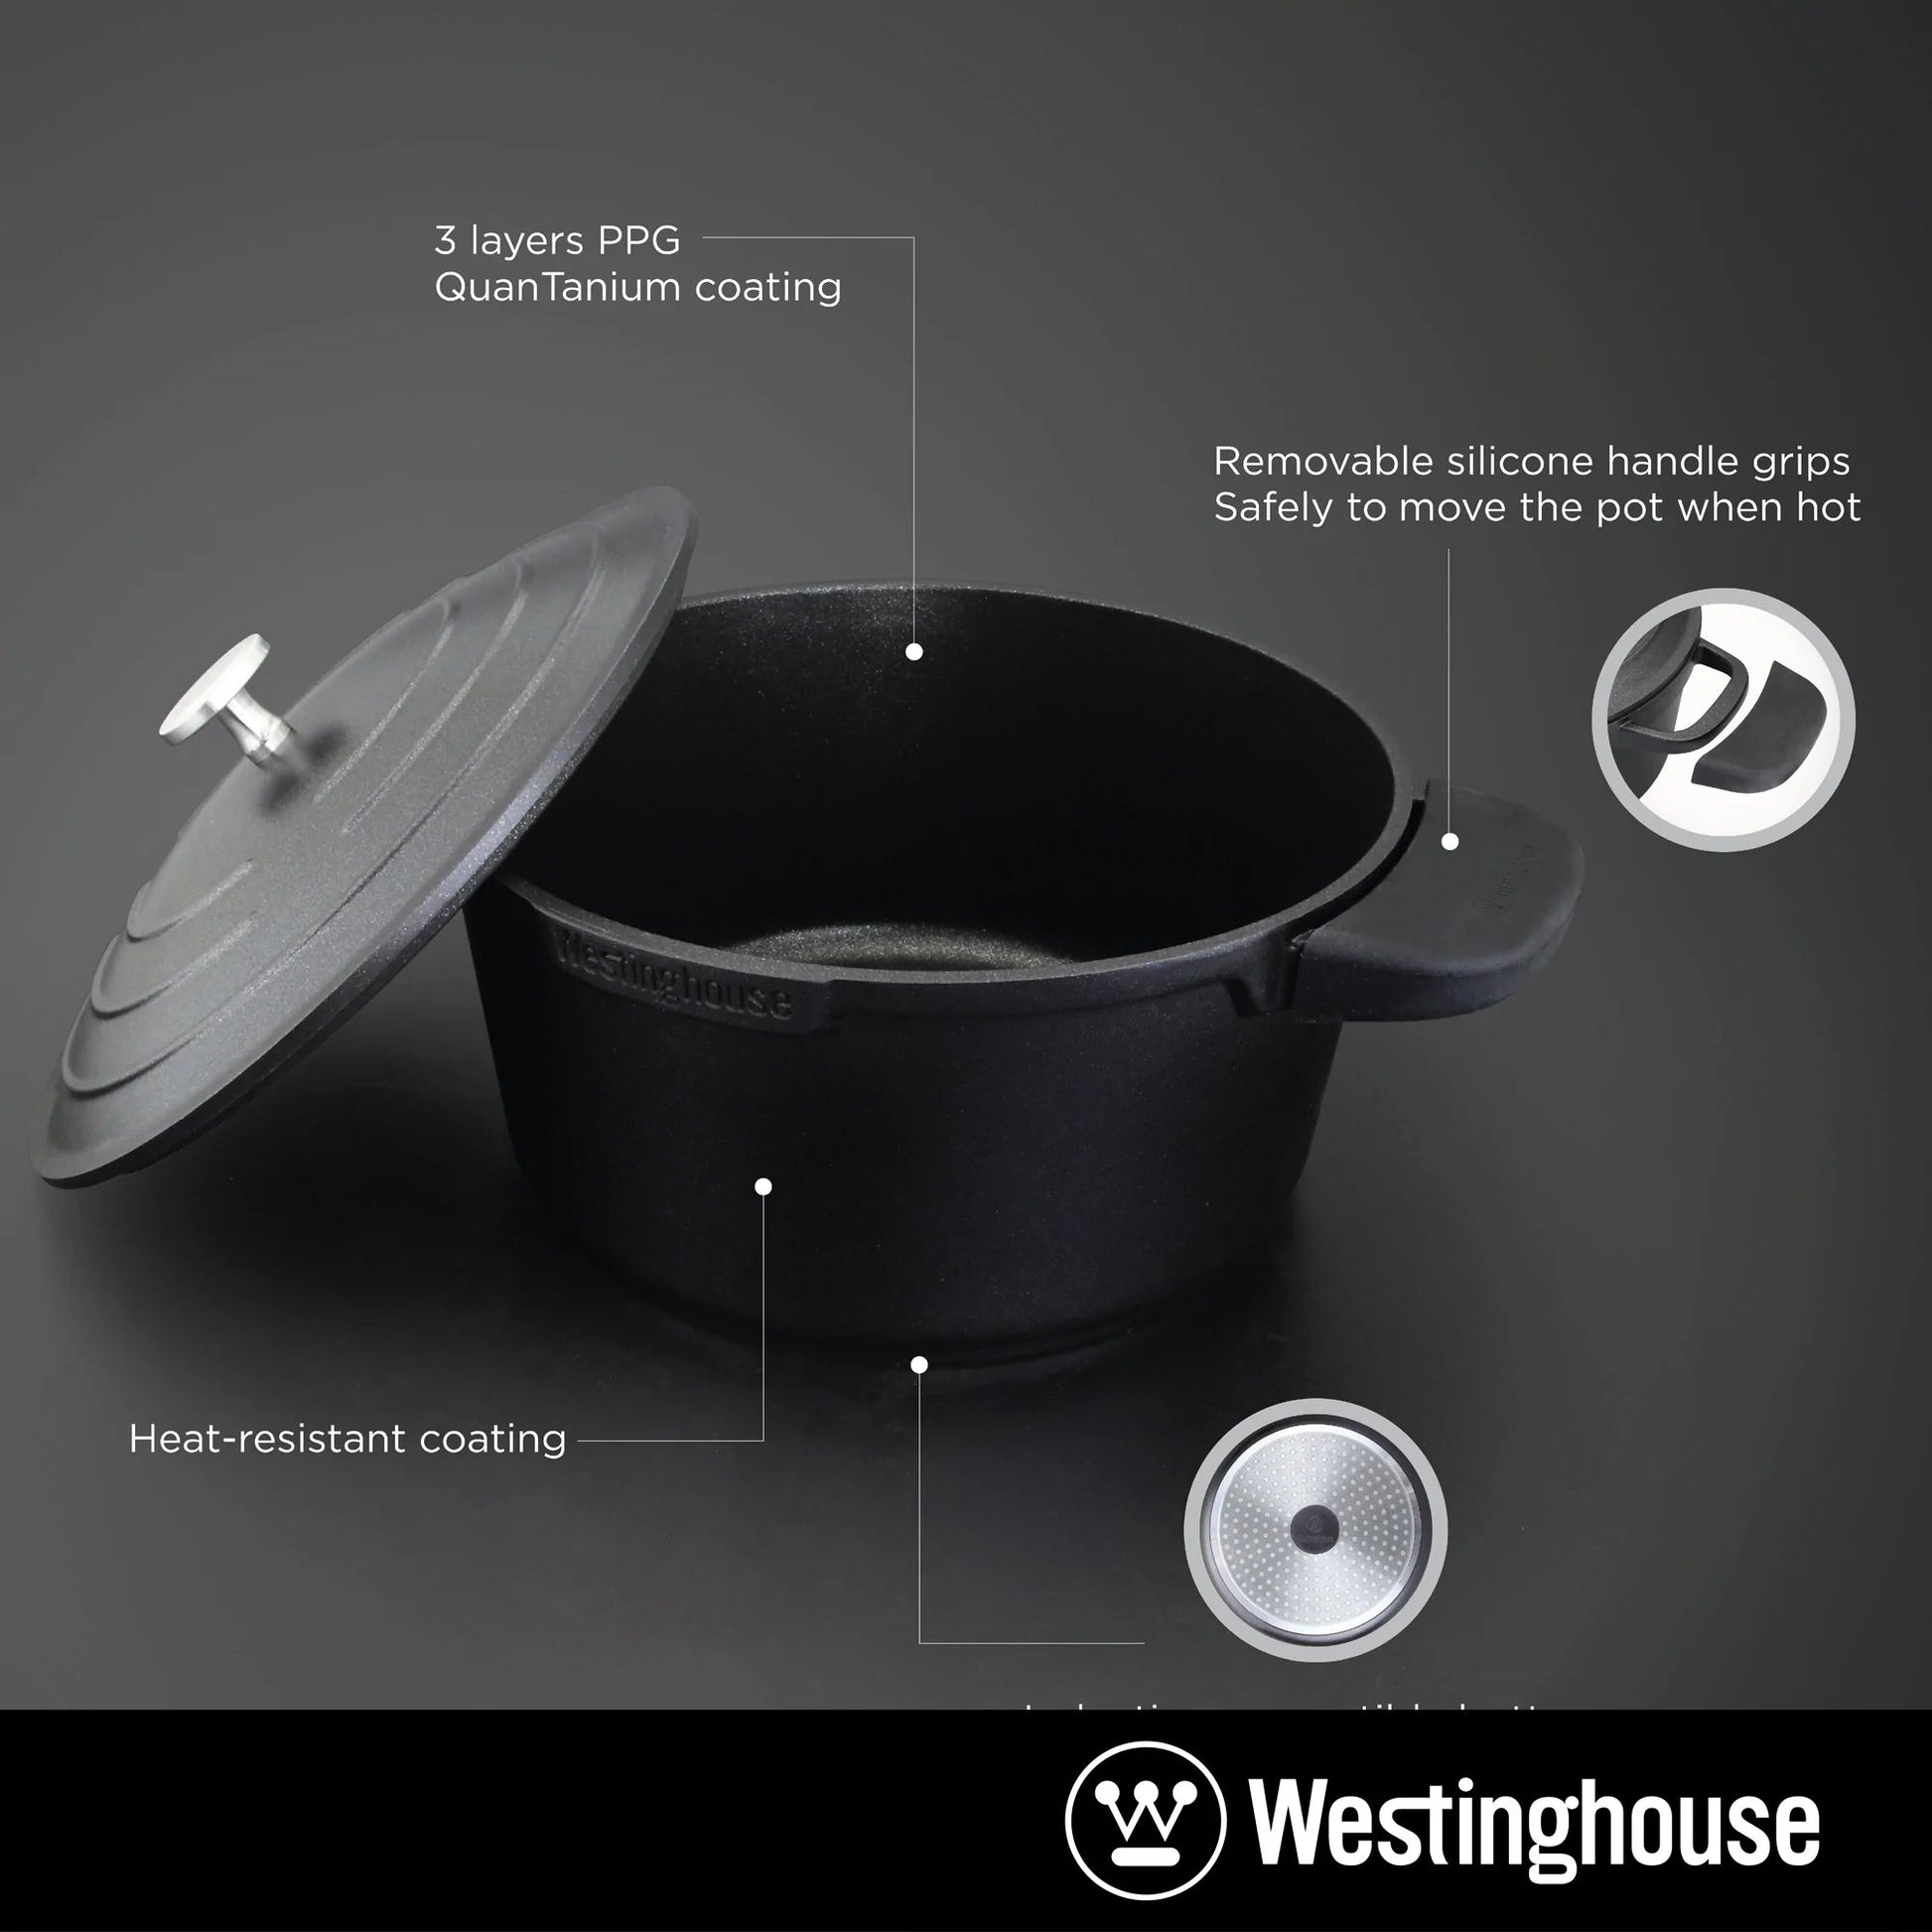 Westinghouse 9” 4 QT. Black Cast Aluminum Dutch Oven With